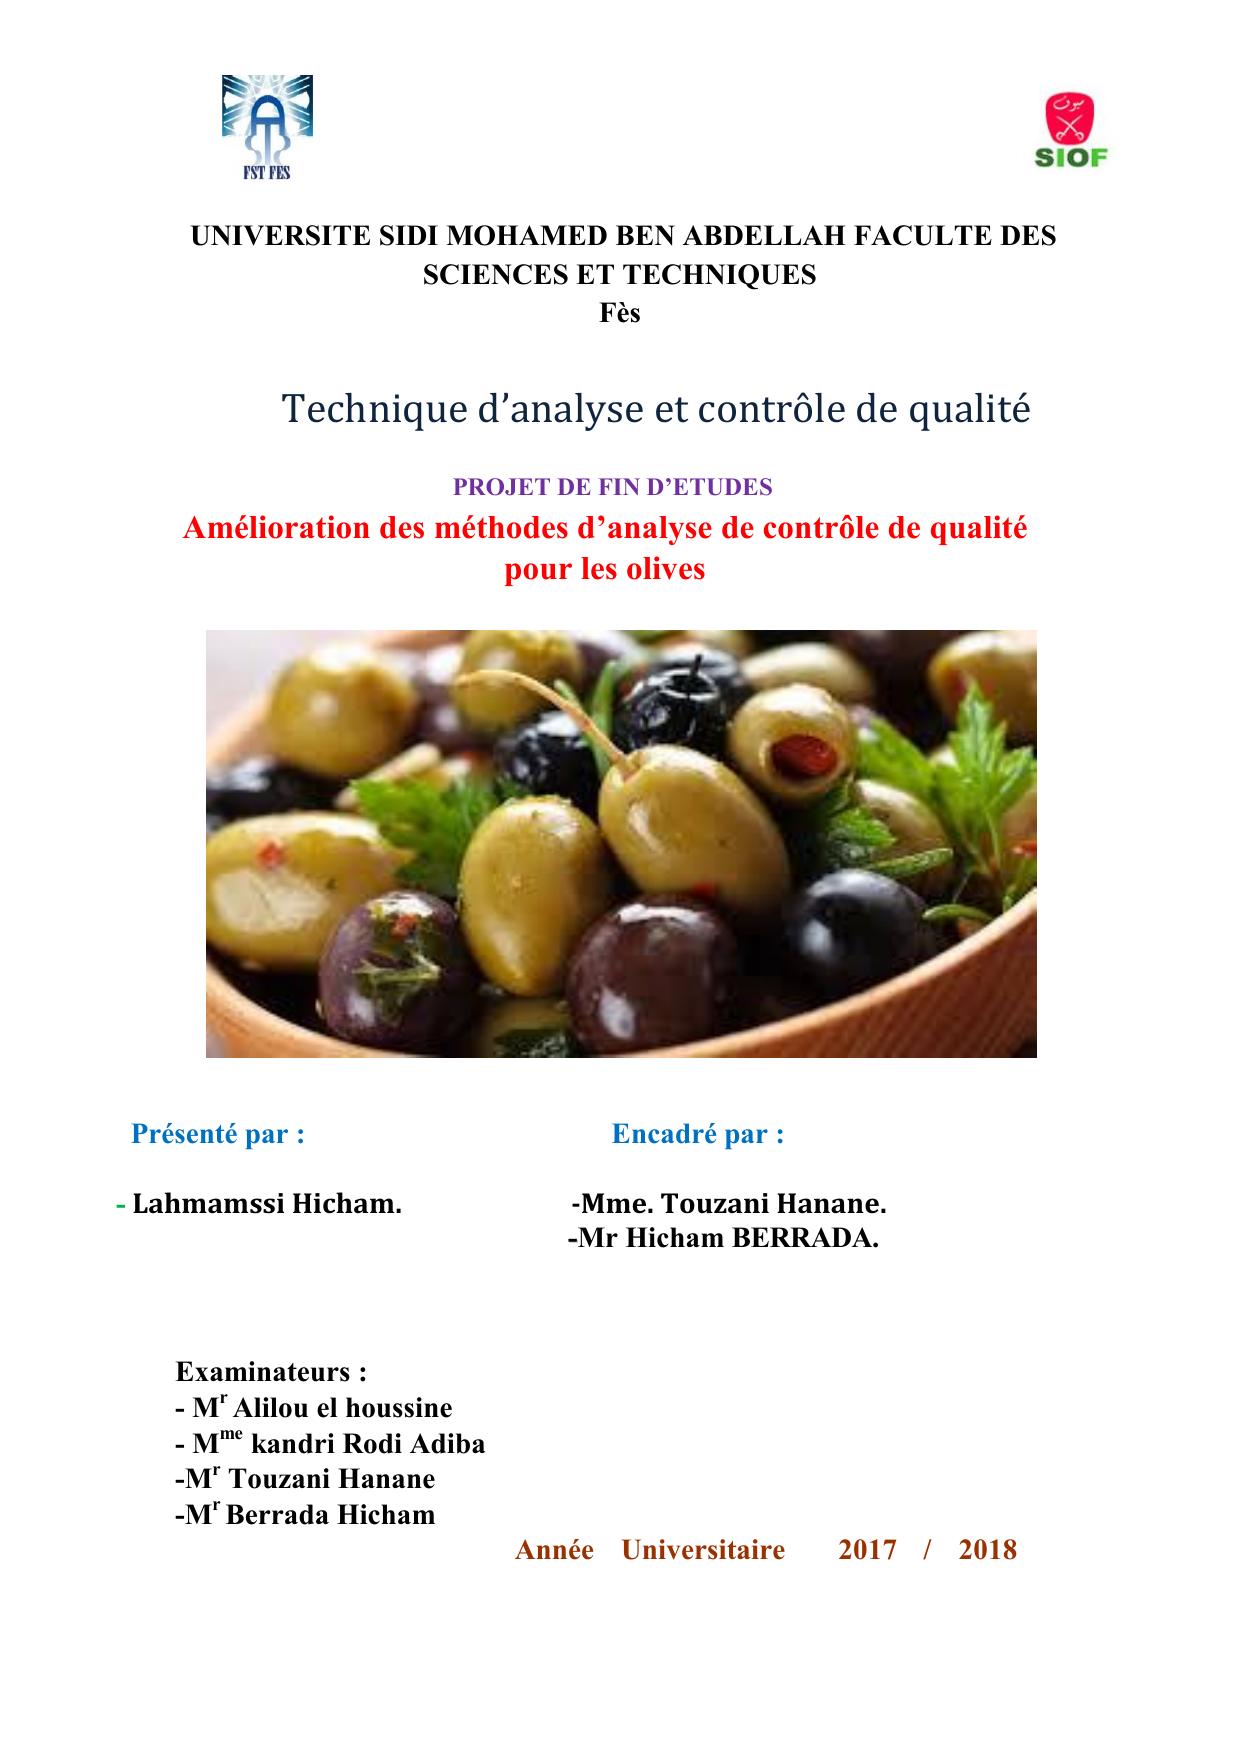 Amélioration des méthodes d’analyse de contrôle de qualité pour les olives